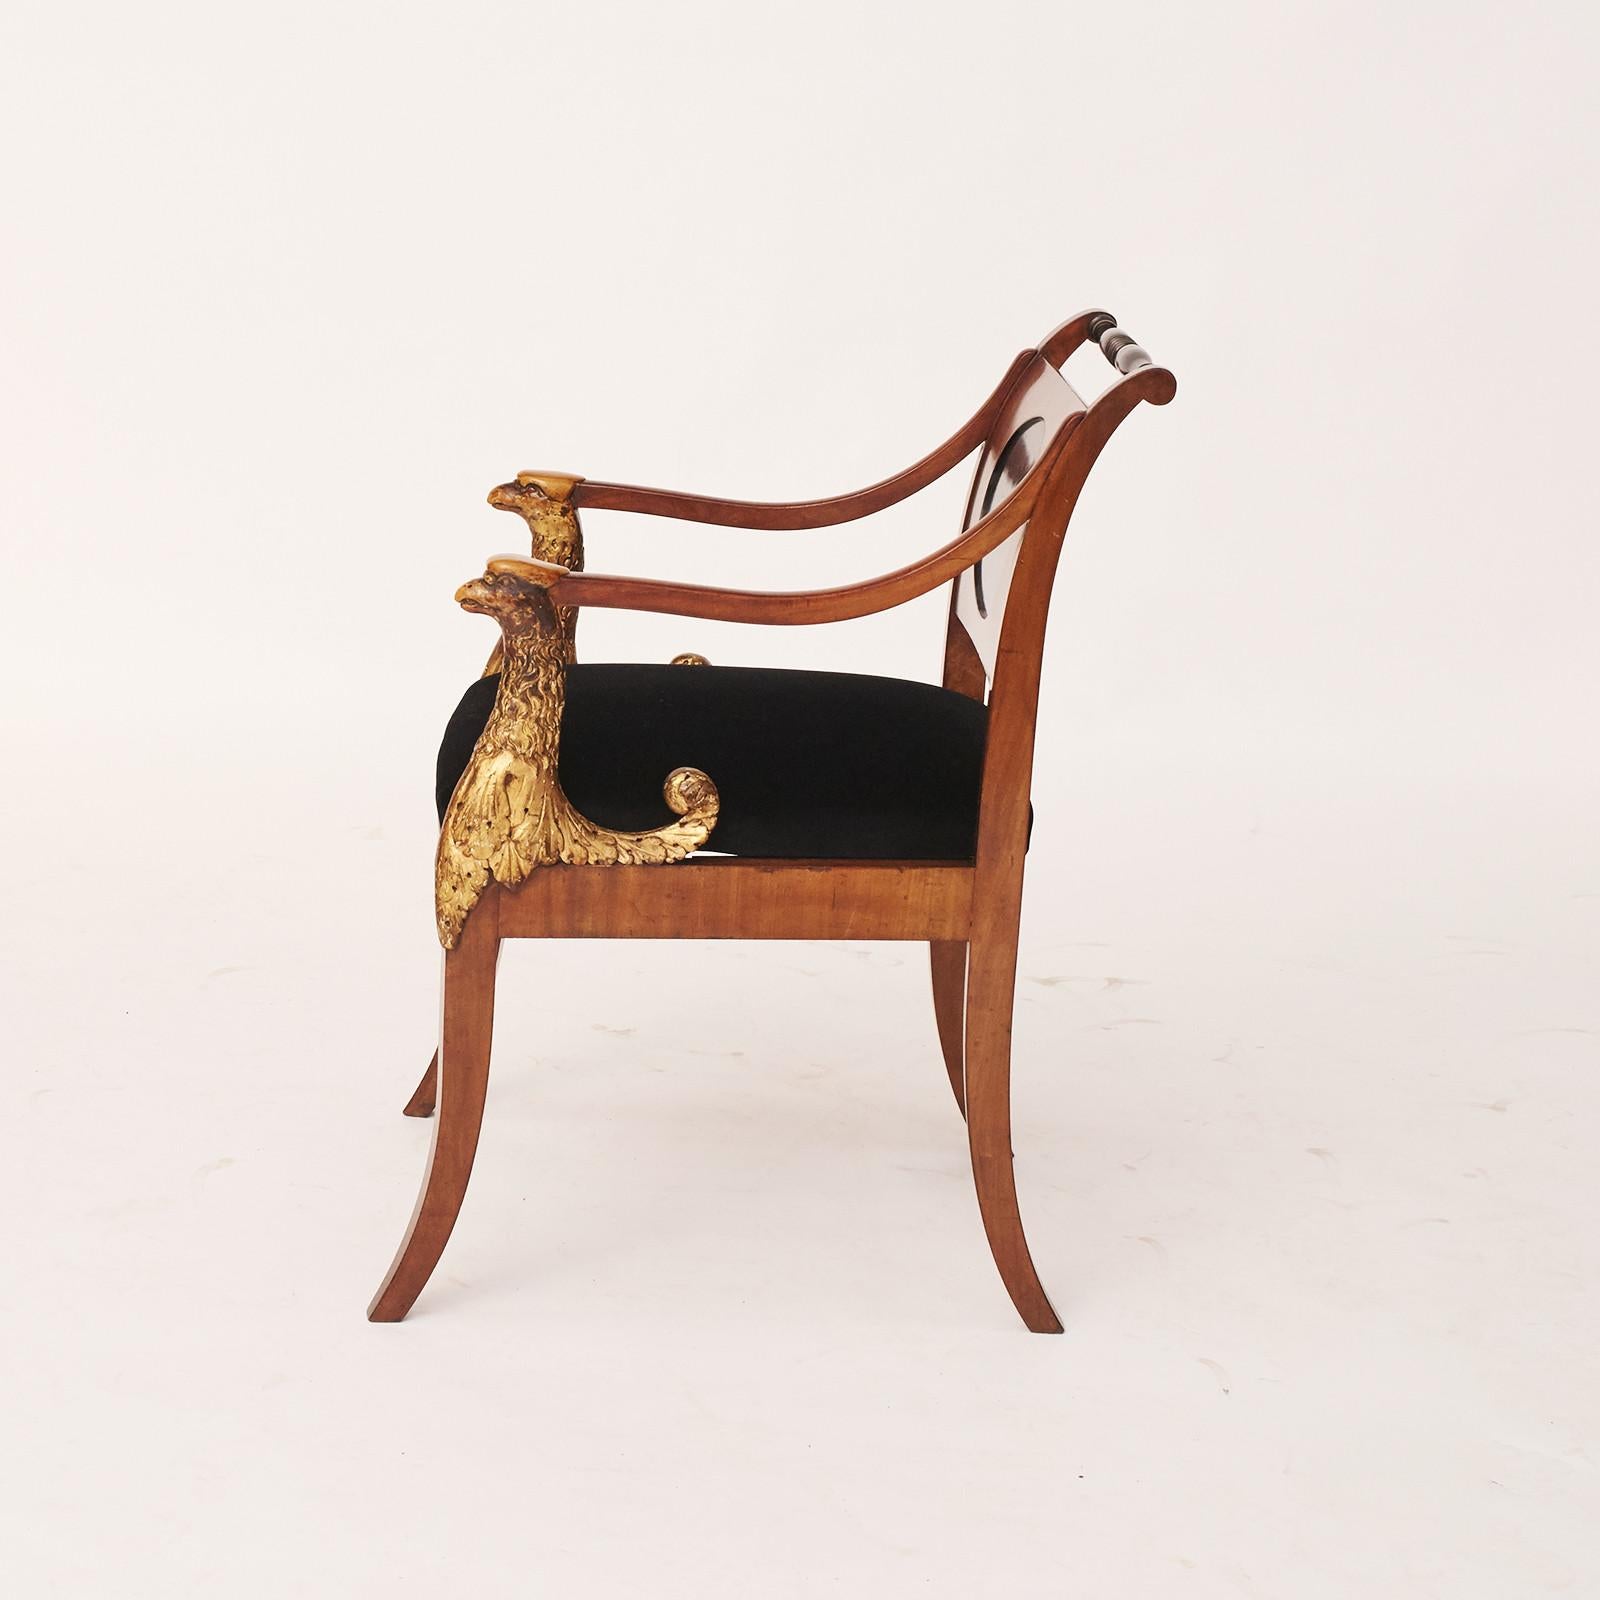 Eleganter und dekorativer Empire-Sessel. Hergestellt aus Mahagoni, mit Intarsien aus hellem Holz (Zitronenbaum). Ovale Rückwand aus ebonisiertem Holz. Vorderseite der Arme in Form von hölzernen, geschnittenen Greifern mit Originalvergoldung. Loser